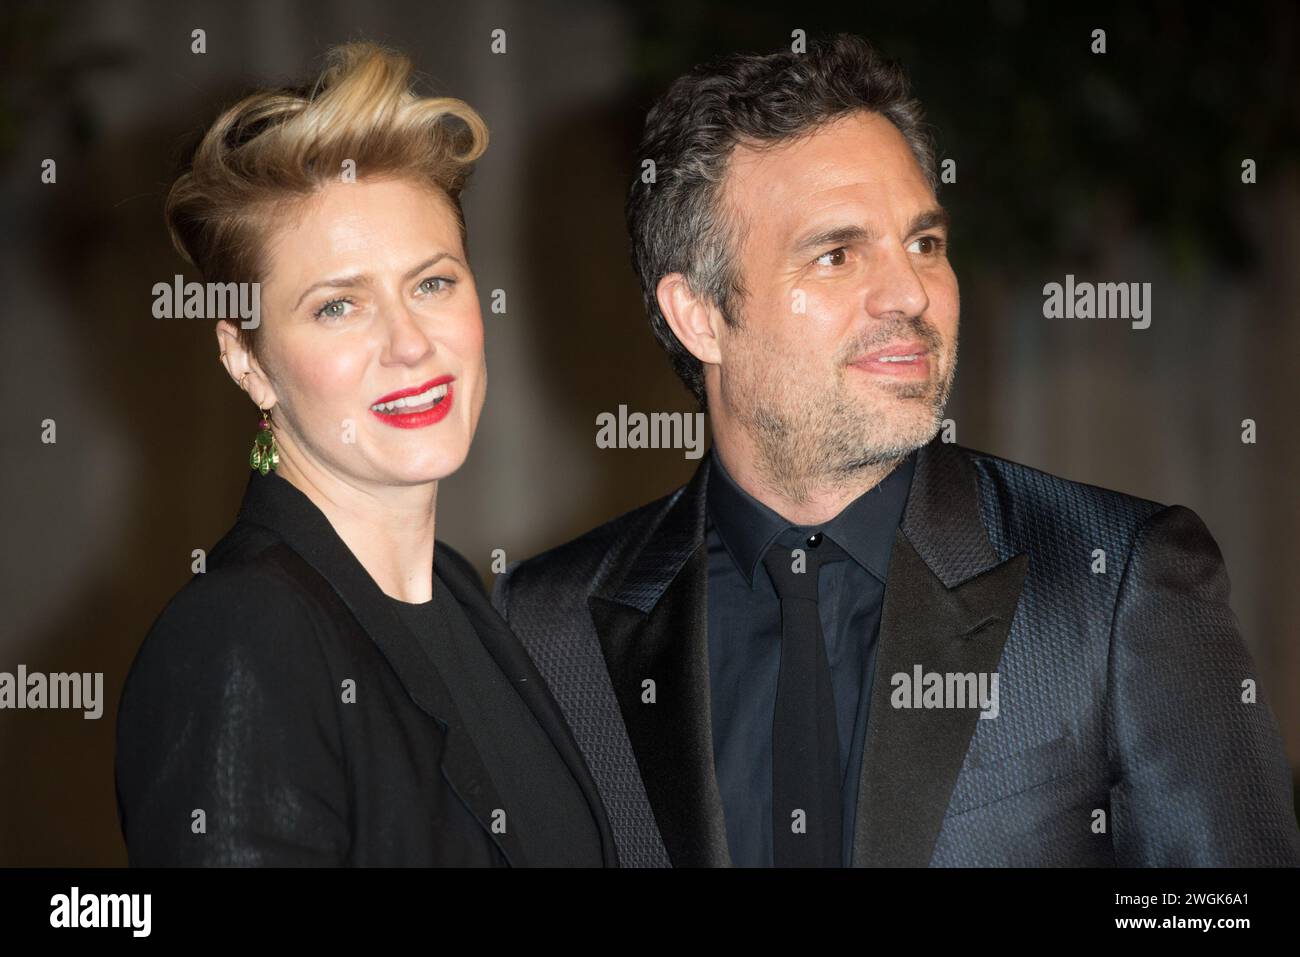 Londres, Royaume-Uni. 08 février 2015. Sur la photo : Mark Ruffalo, épouse Sunrise Coigney assiste à la 68e édition annuelle des EE British Academy film Awards After-Party à Grosvenor Banque D'Images